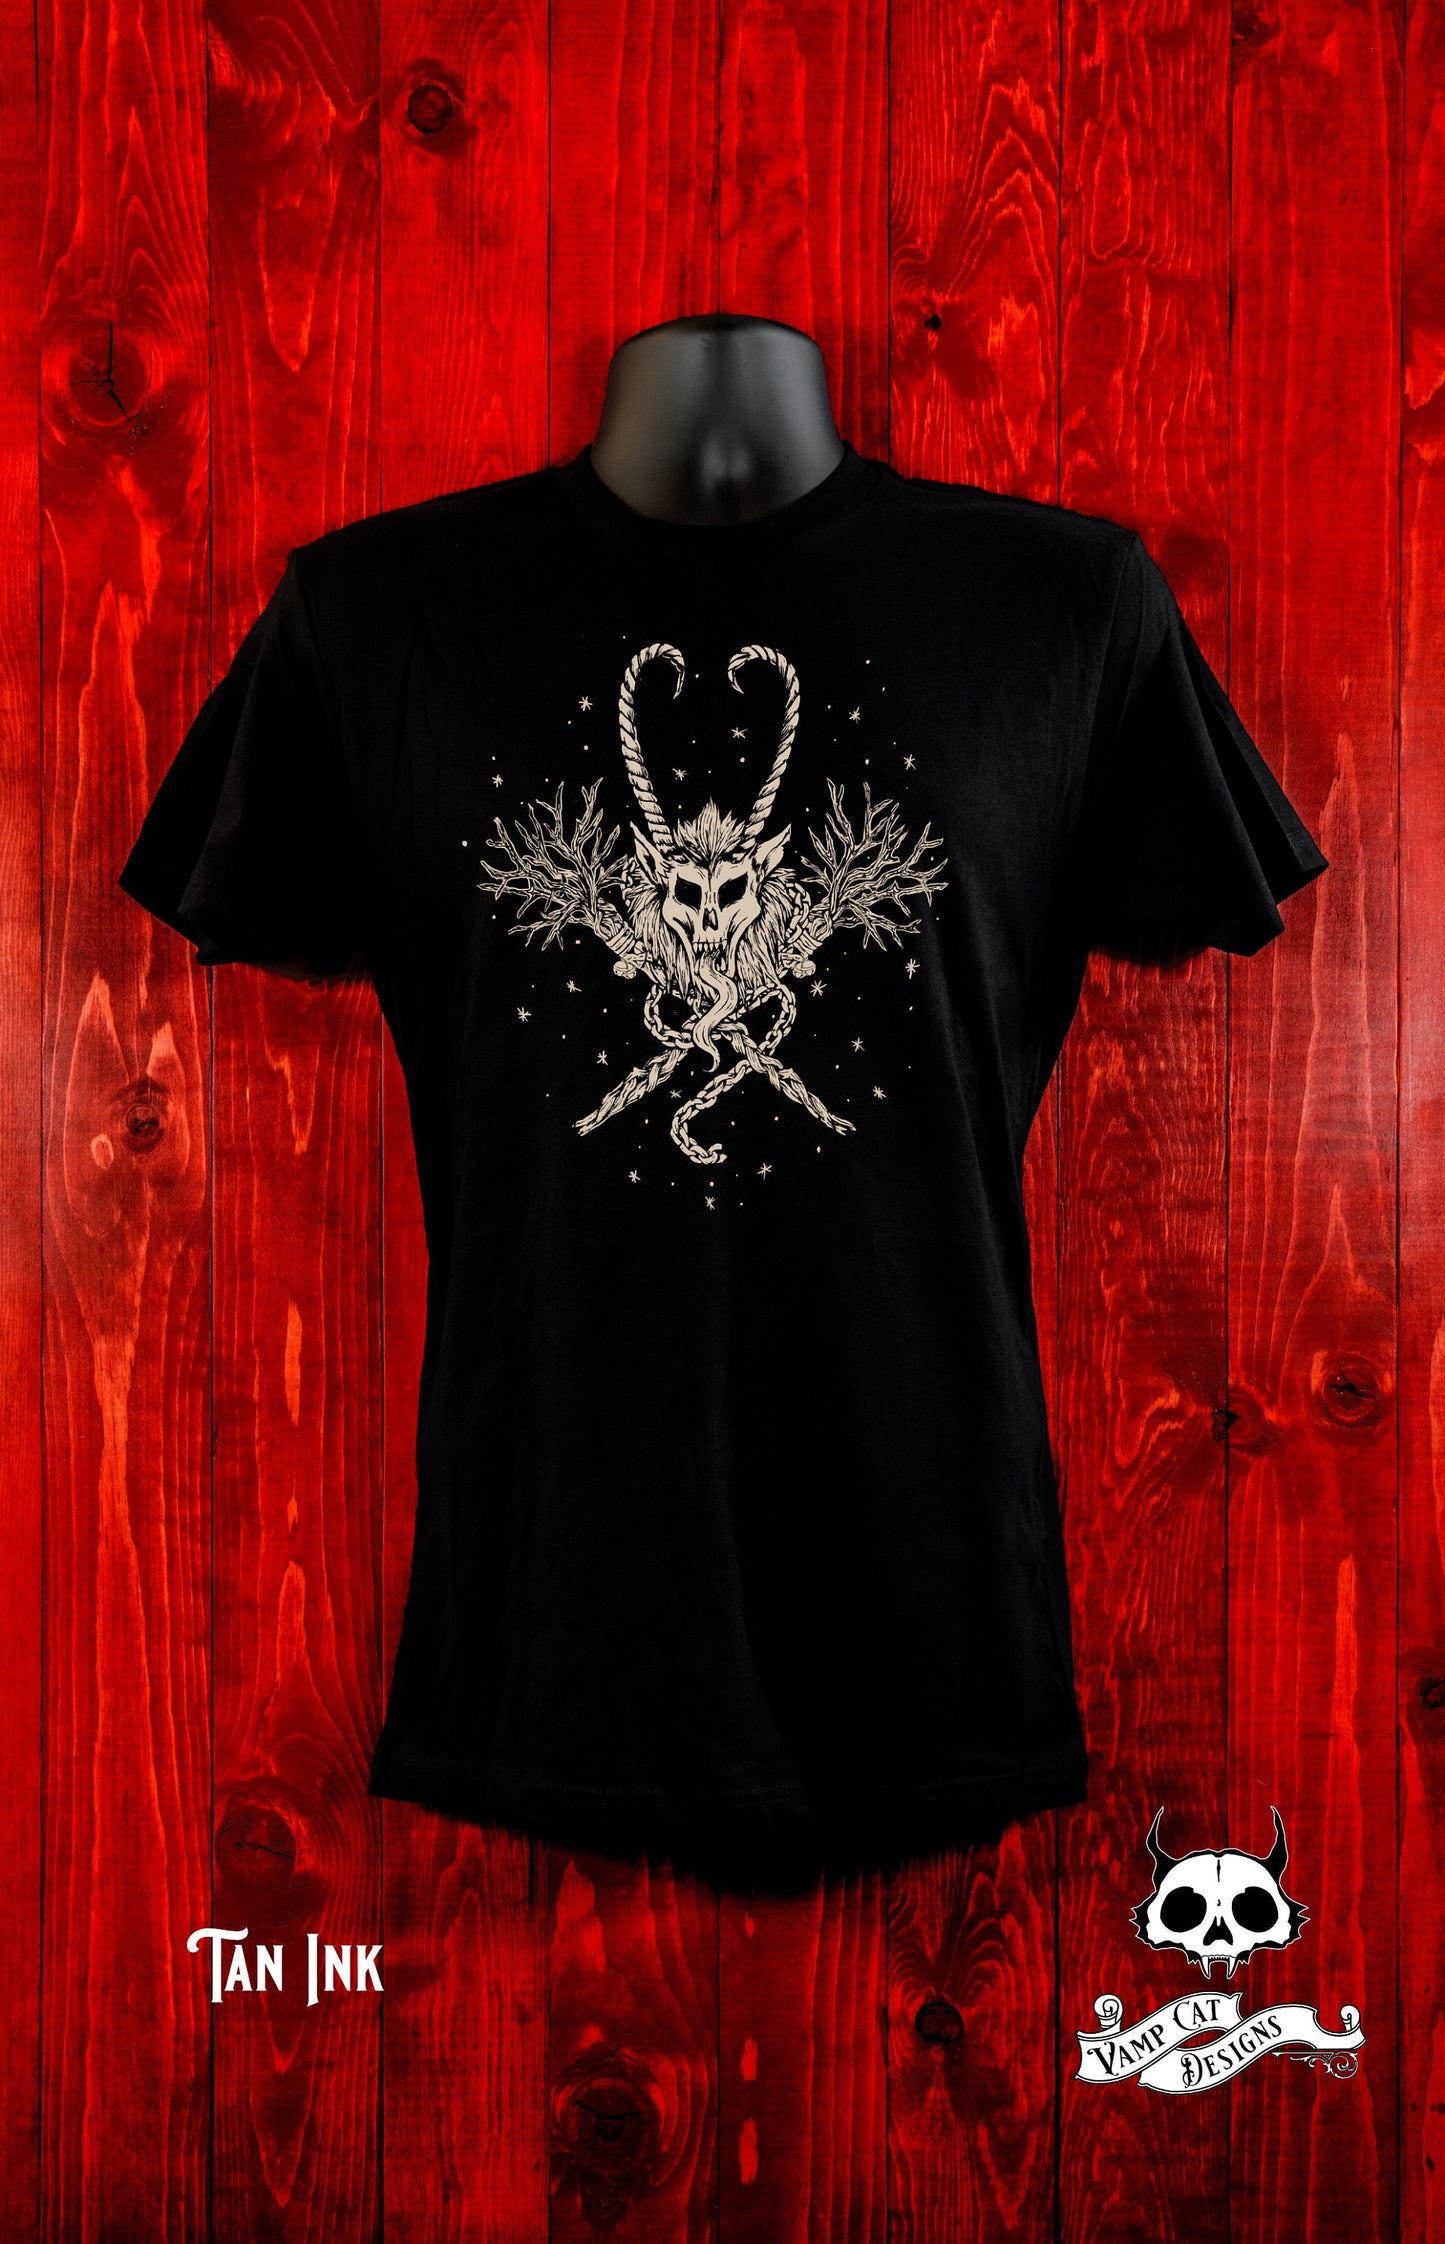 Krampus T-Shirt-Krampus Skull Emblem-Creepmas-Unisex Tee-Dark Holiday Art-Devil-Horror Krampus-Christmas-Graphic Tee-Original Illustration